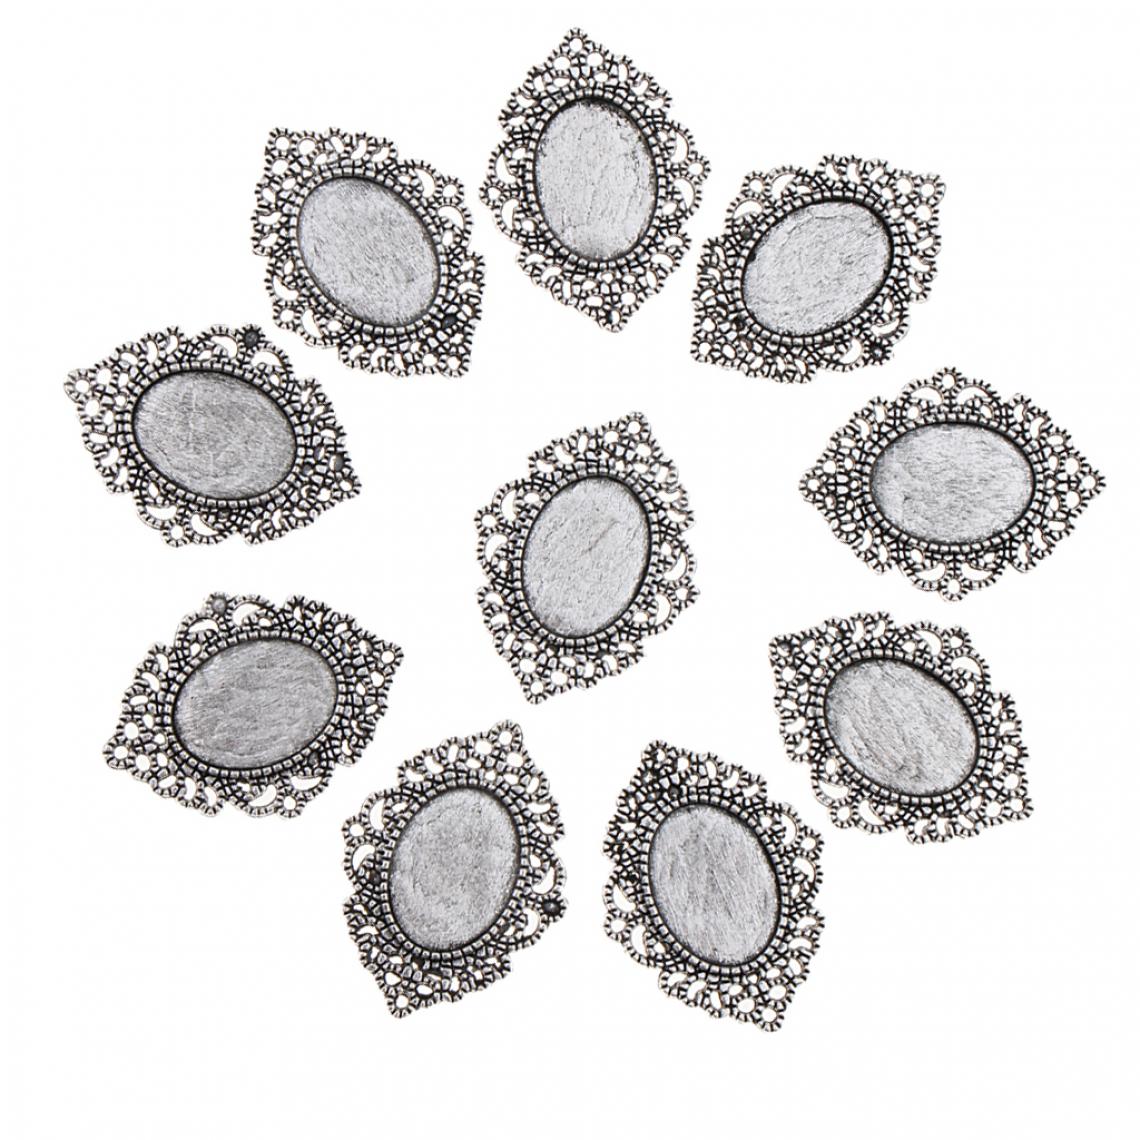 marque generique - 10pcs Pendentif de Collier Accessoire pour Fabrication des Bijoux Bricolage Artisanat - Motif de Plateau Ovale Argent - Perles